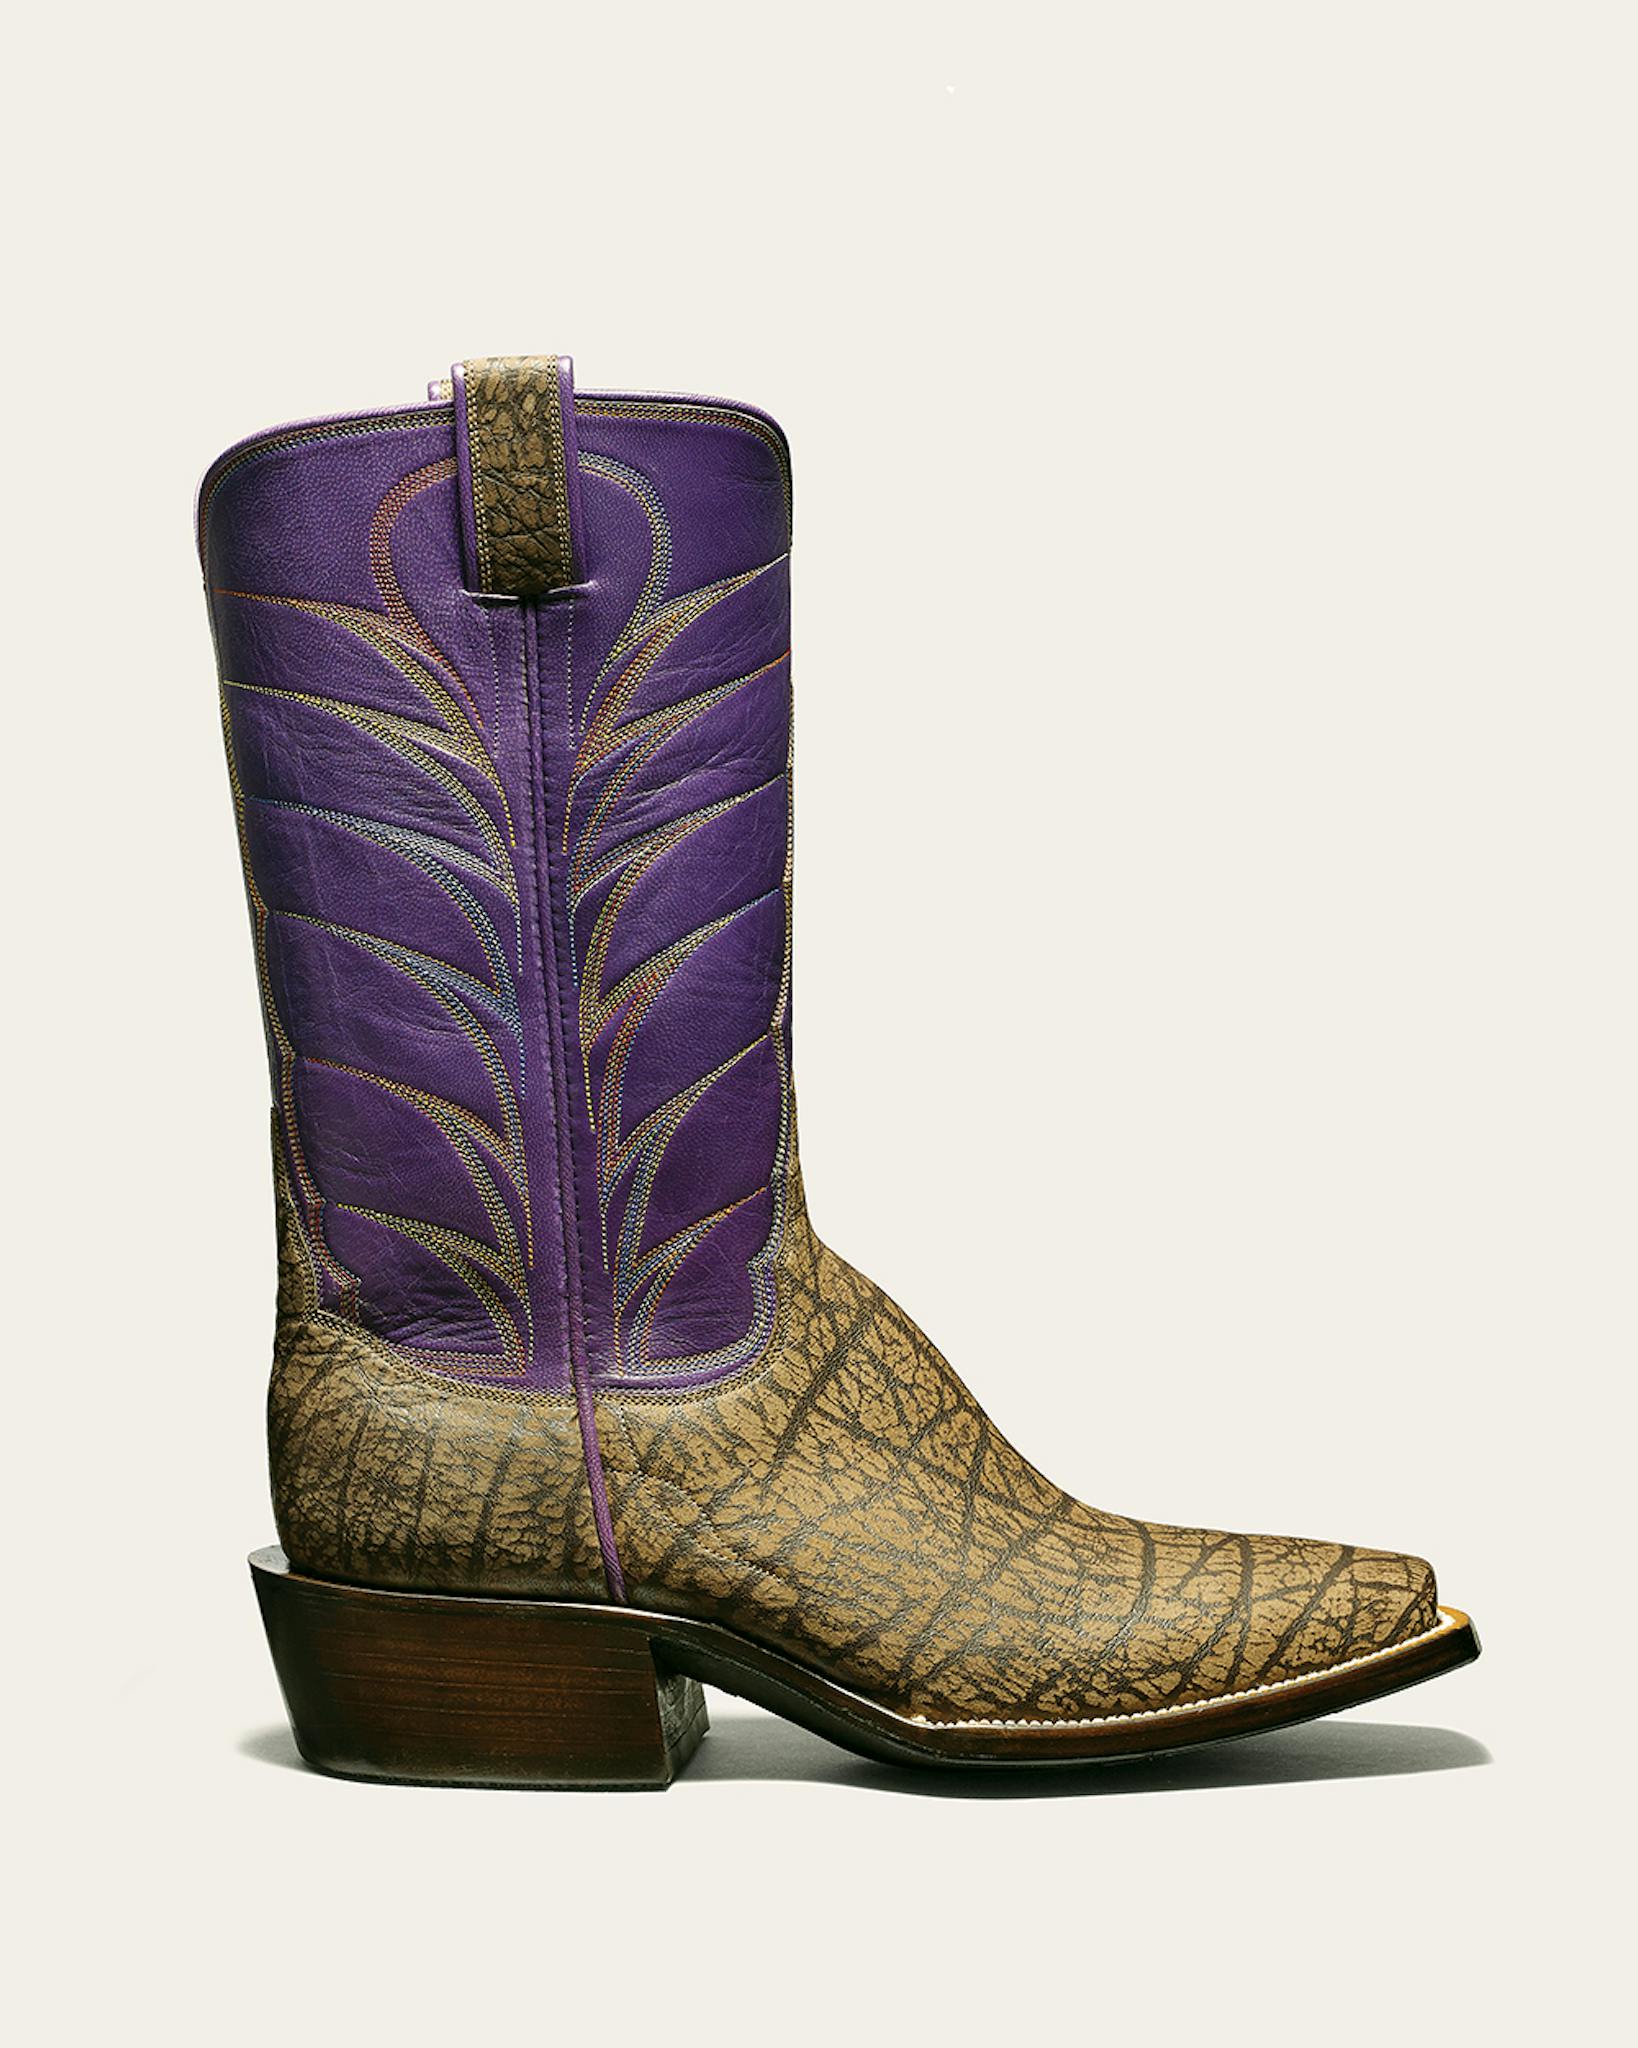 Van Curen Leather boot with purple shaft.